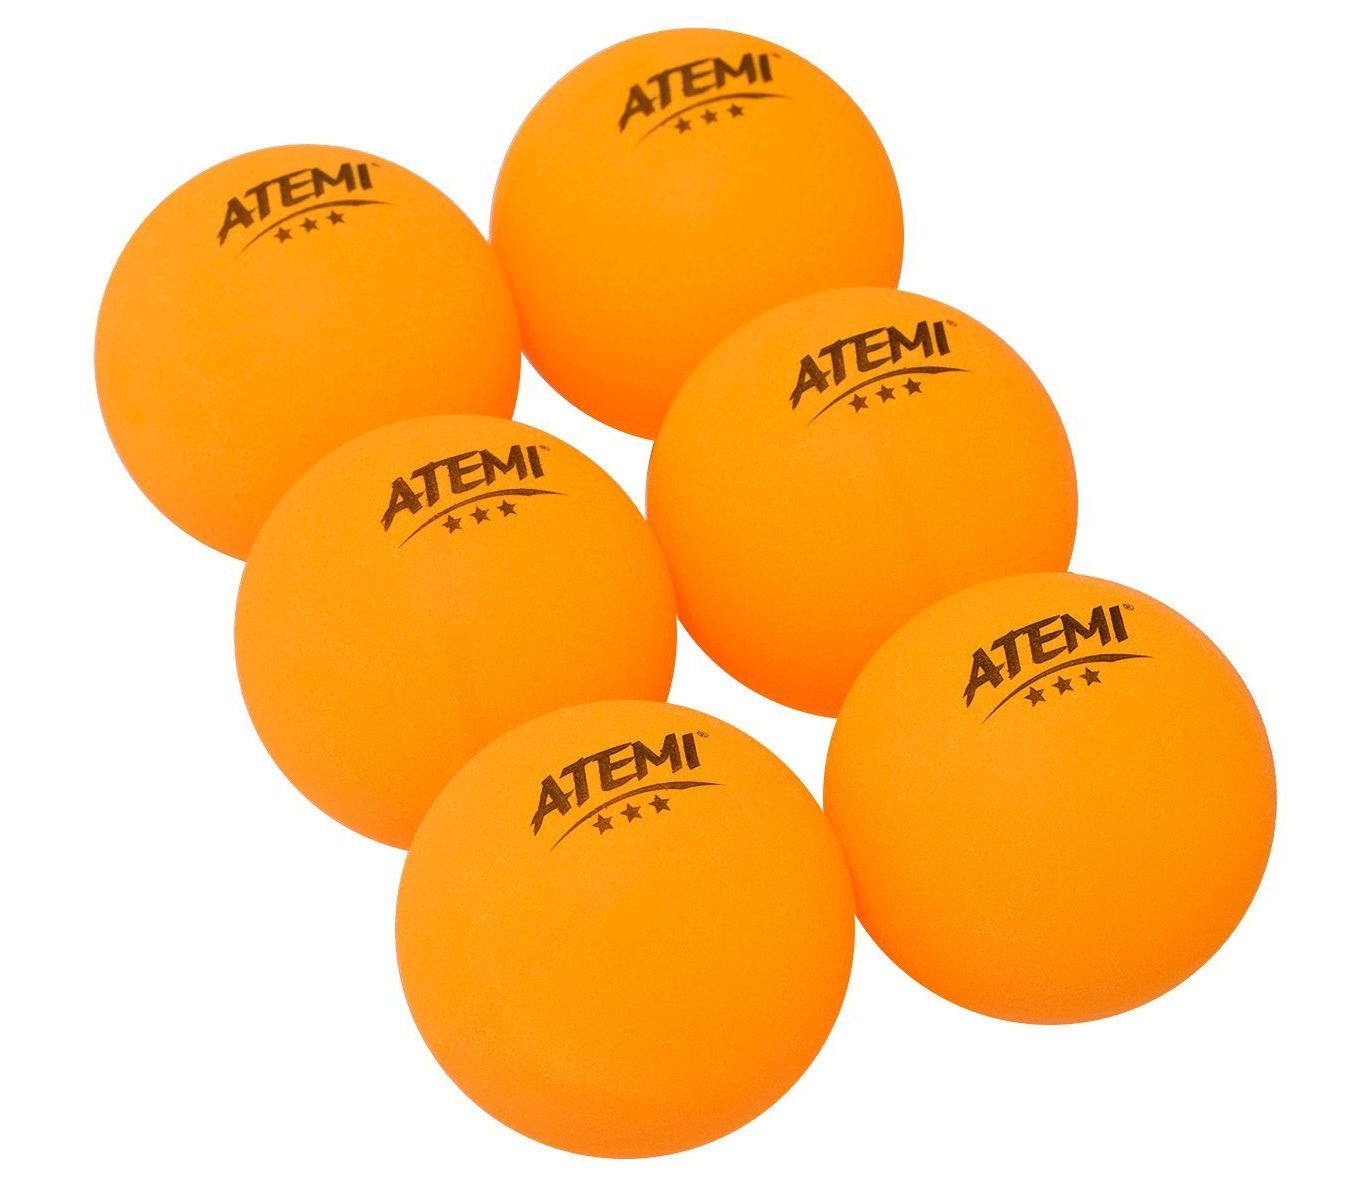 3 мяч для настольного тенниса. Мяч для настольного тенниса Atemi. Мячи для настольного тенниса Atemi 3, цвет оранжевый, 6 шт. Мяч для настольного тенниса Atemi 3* 6шт. Оранжевый. Мячики для настольного тенниса Sponeta 3 Star.